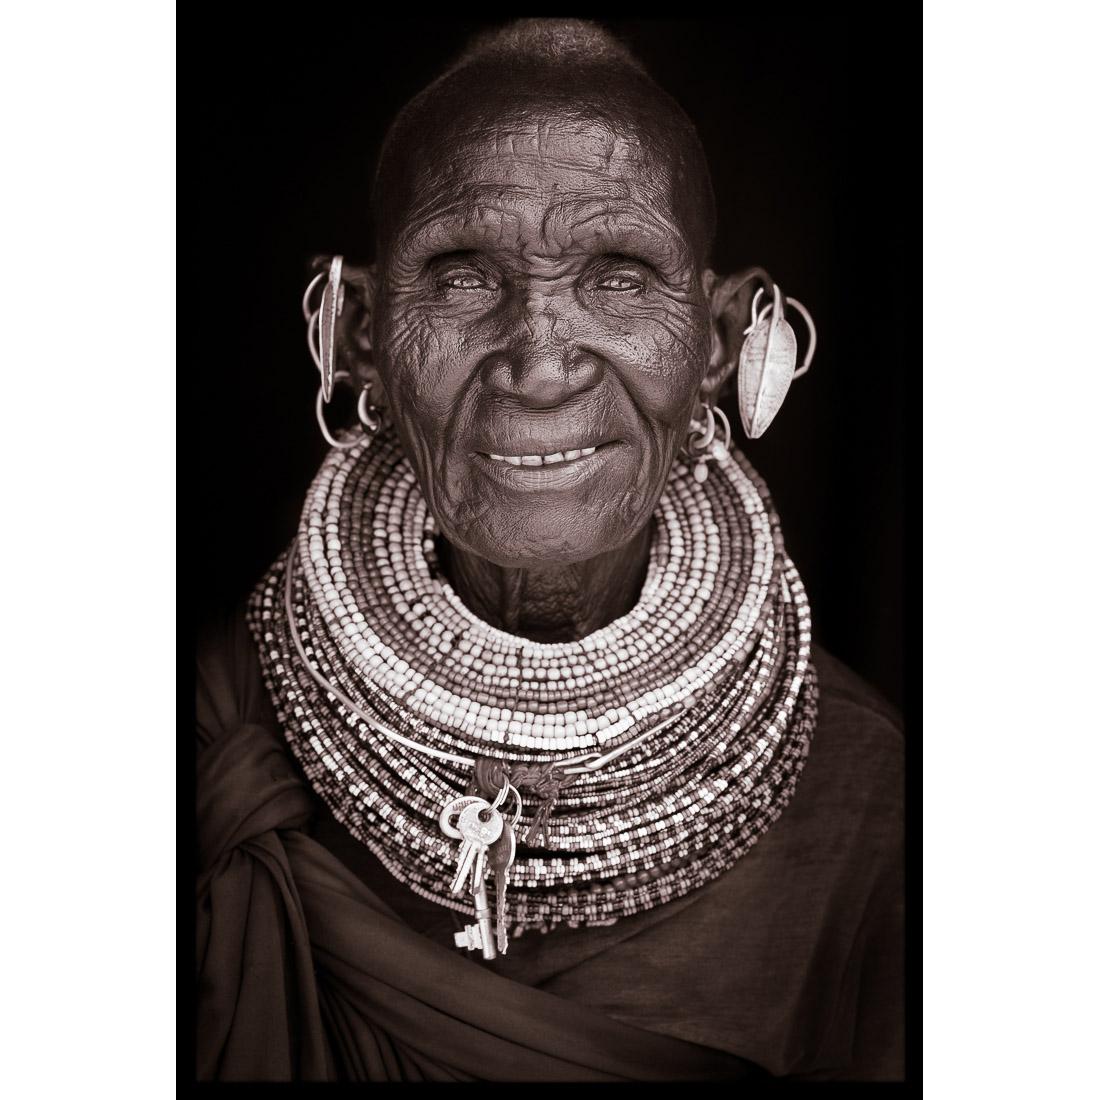 Portrait de Nganamya, une femme Turkana du nord du Kenya, en 2019.

Le travail de John Kenny est entièrement tourné sur place, dans certains des coins les plus reculés d'Afrique. Ses images sont toutes prises à la lumière naturelle et ses sujets